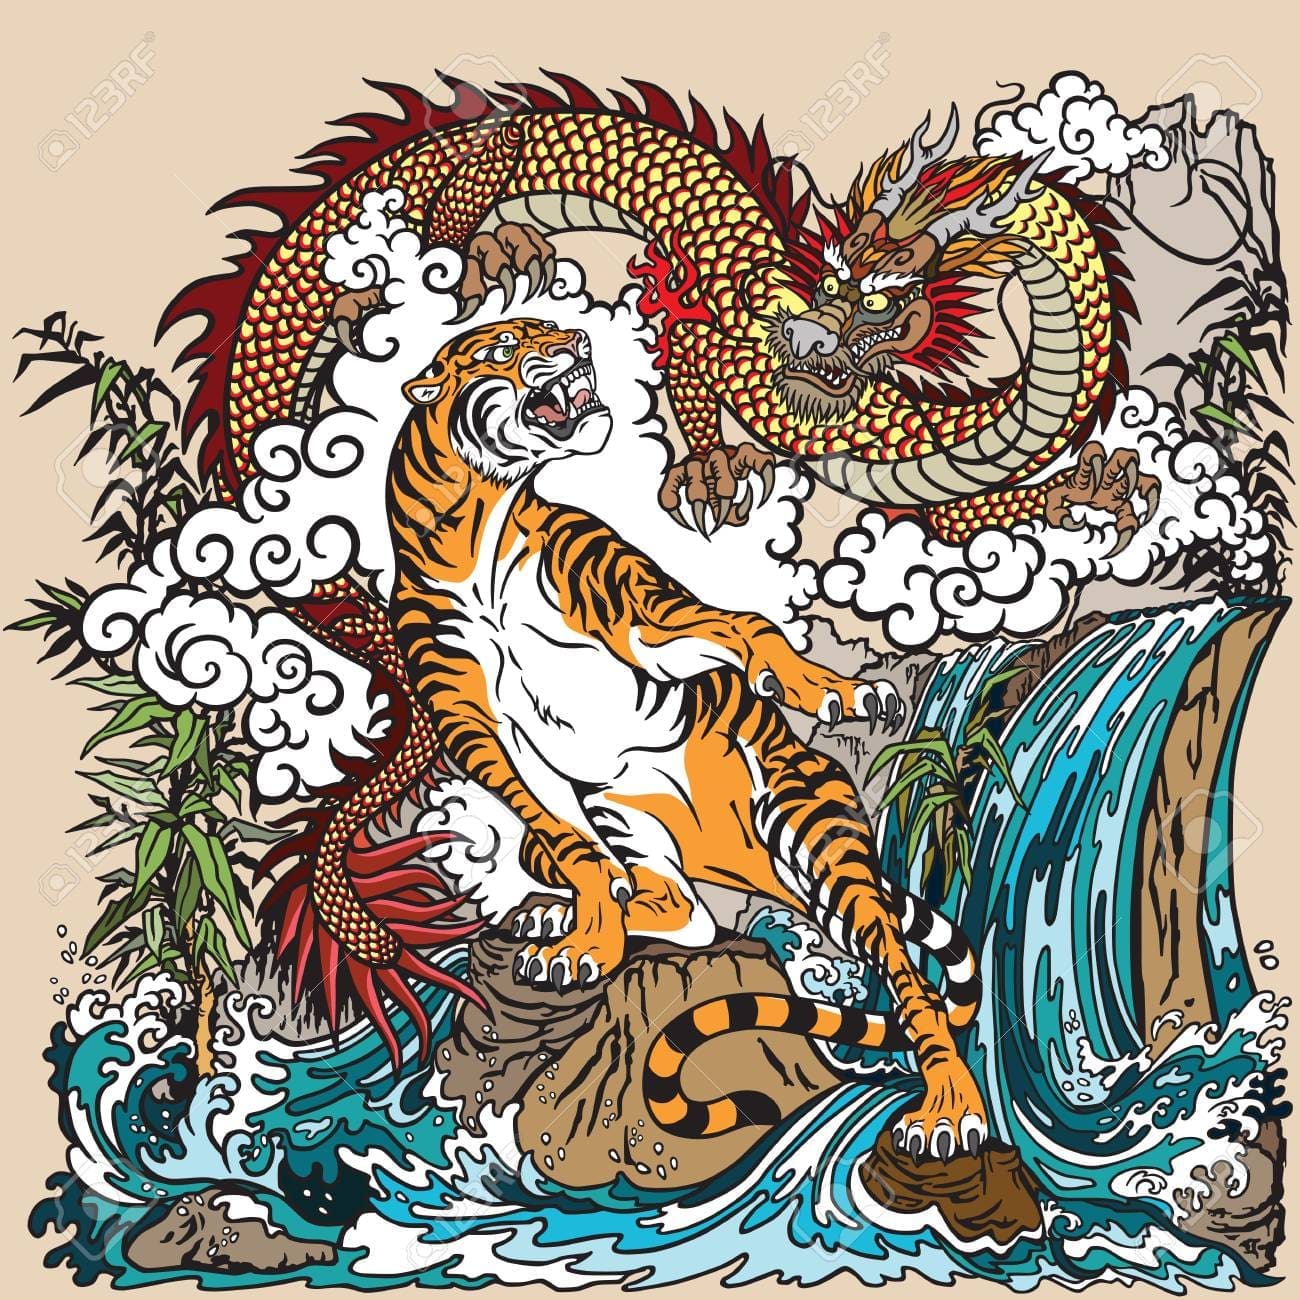 pangong tso dragon and tiger face off